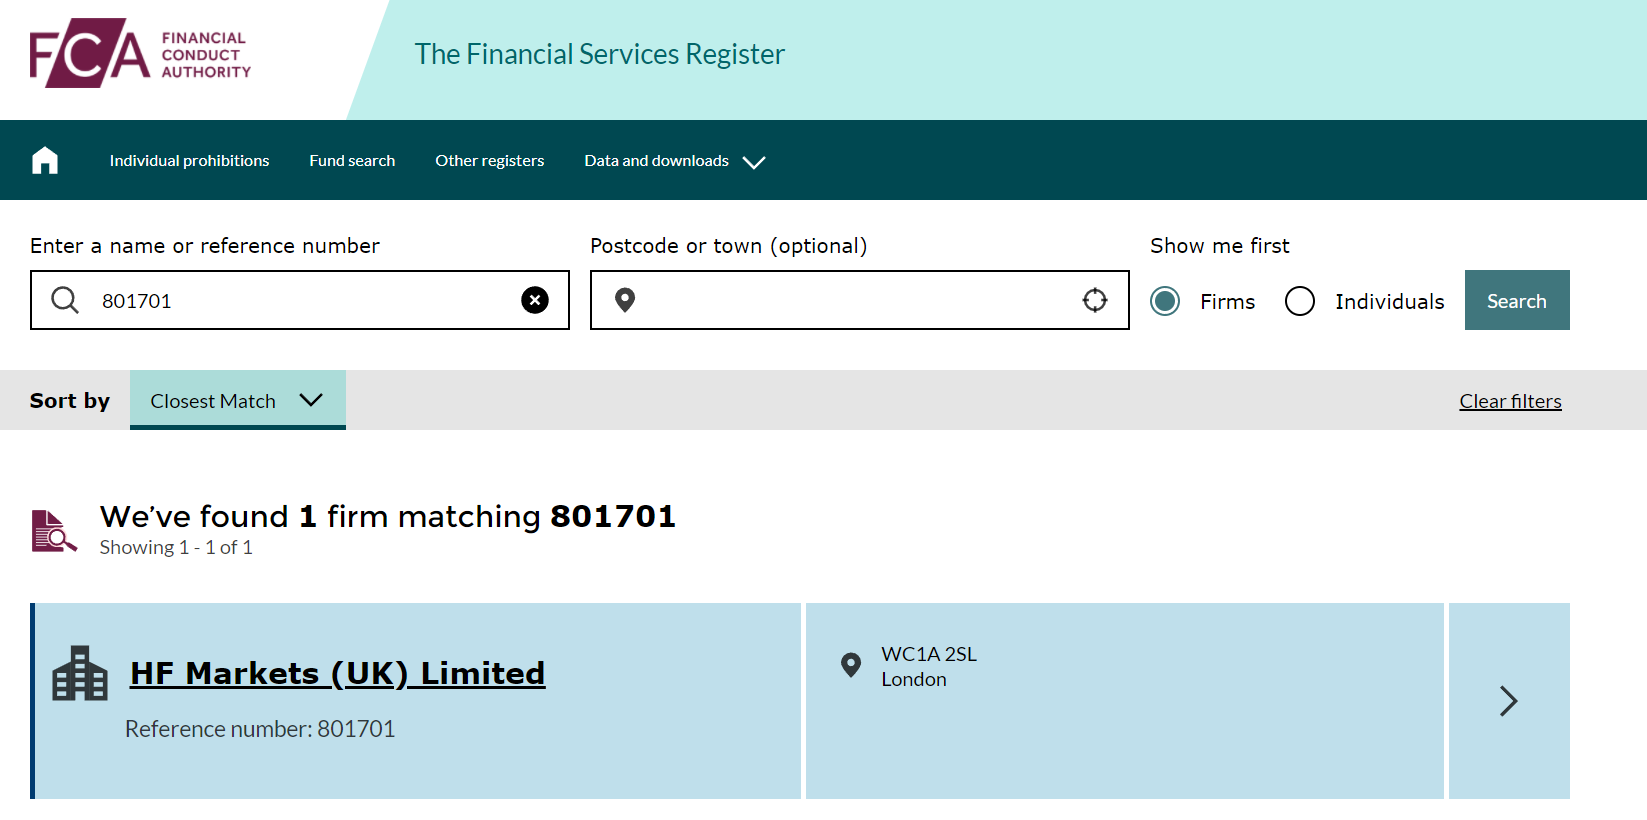 FCA financial register query for HF